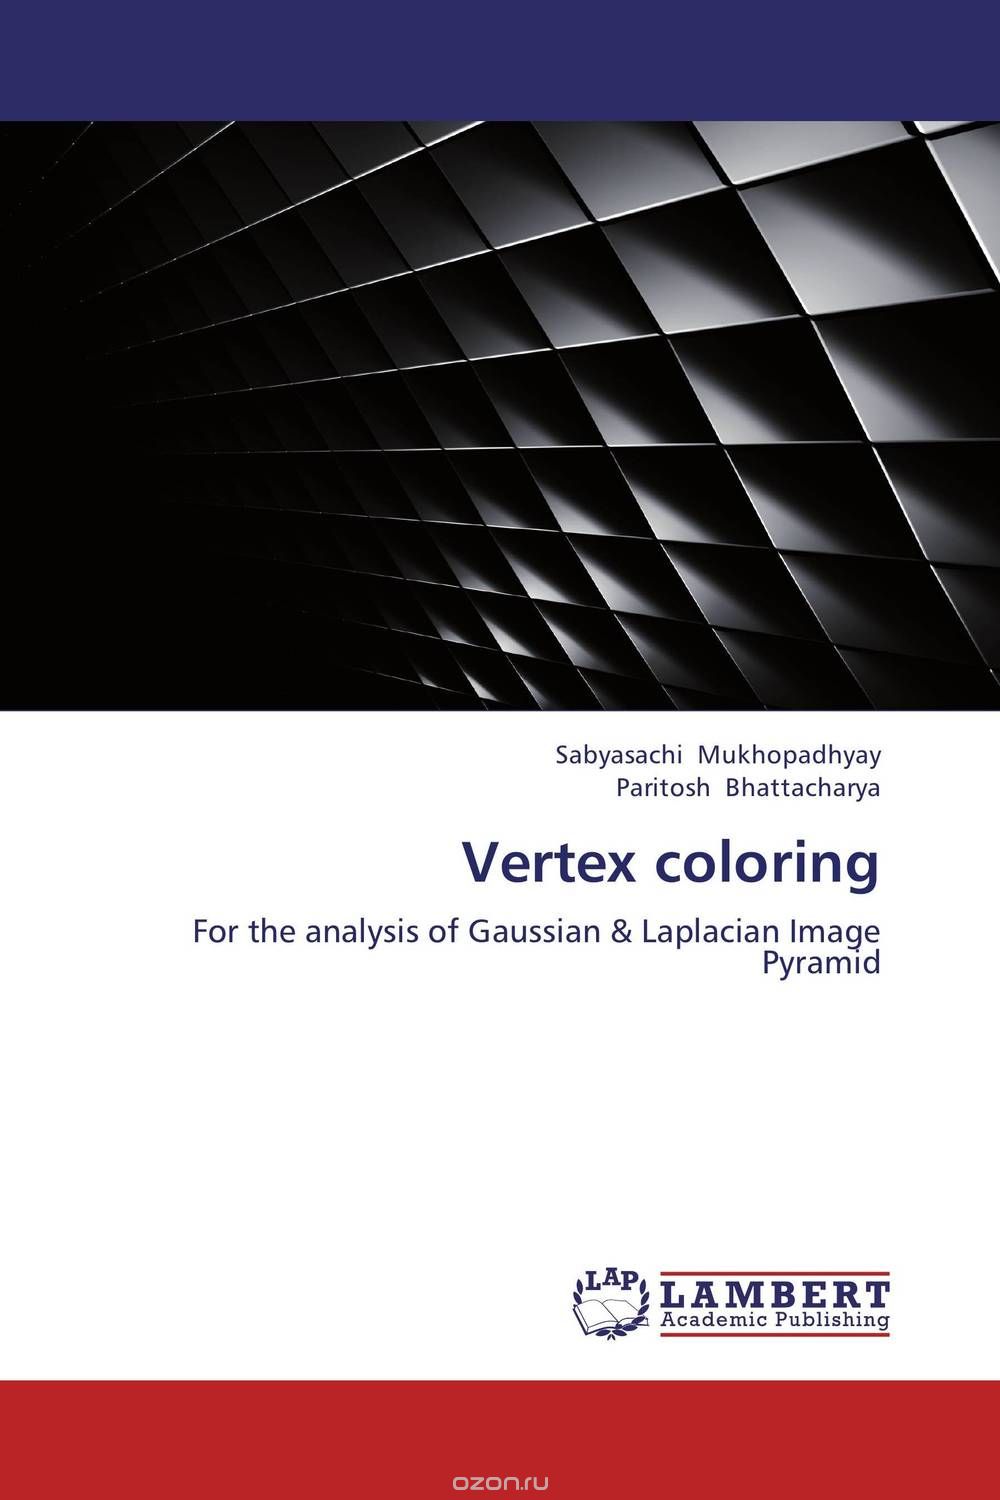 Скачать книгу "Vertex coloring"